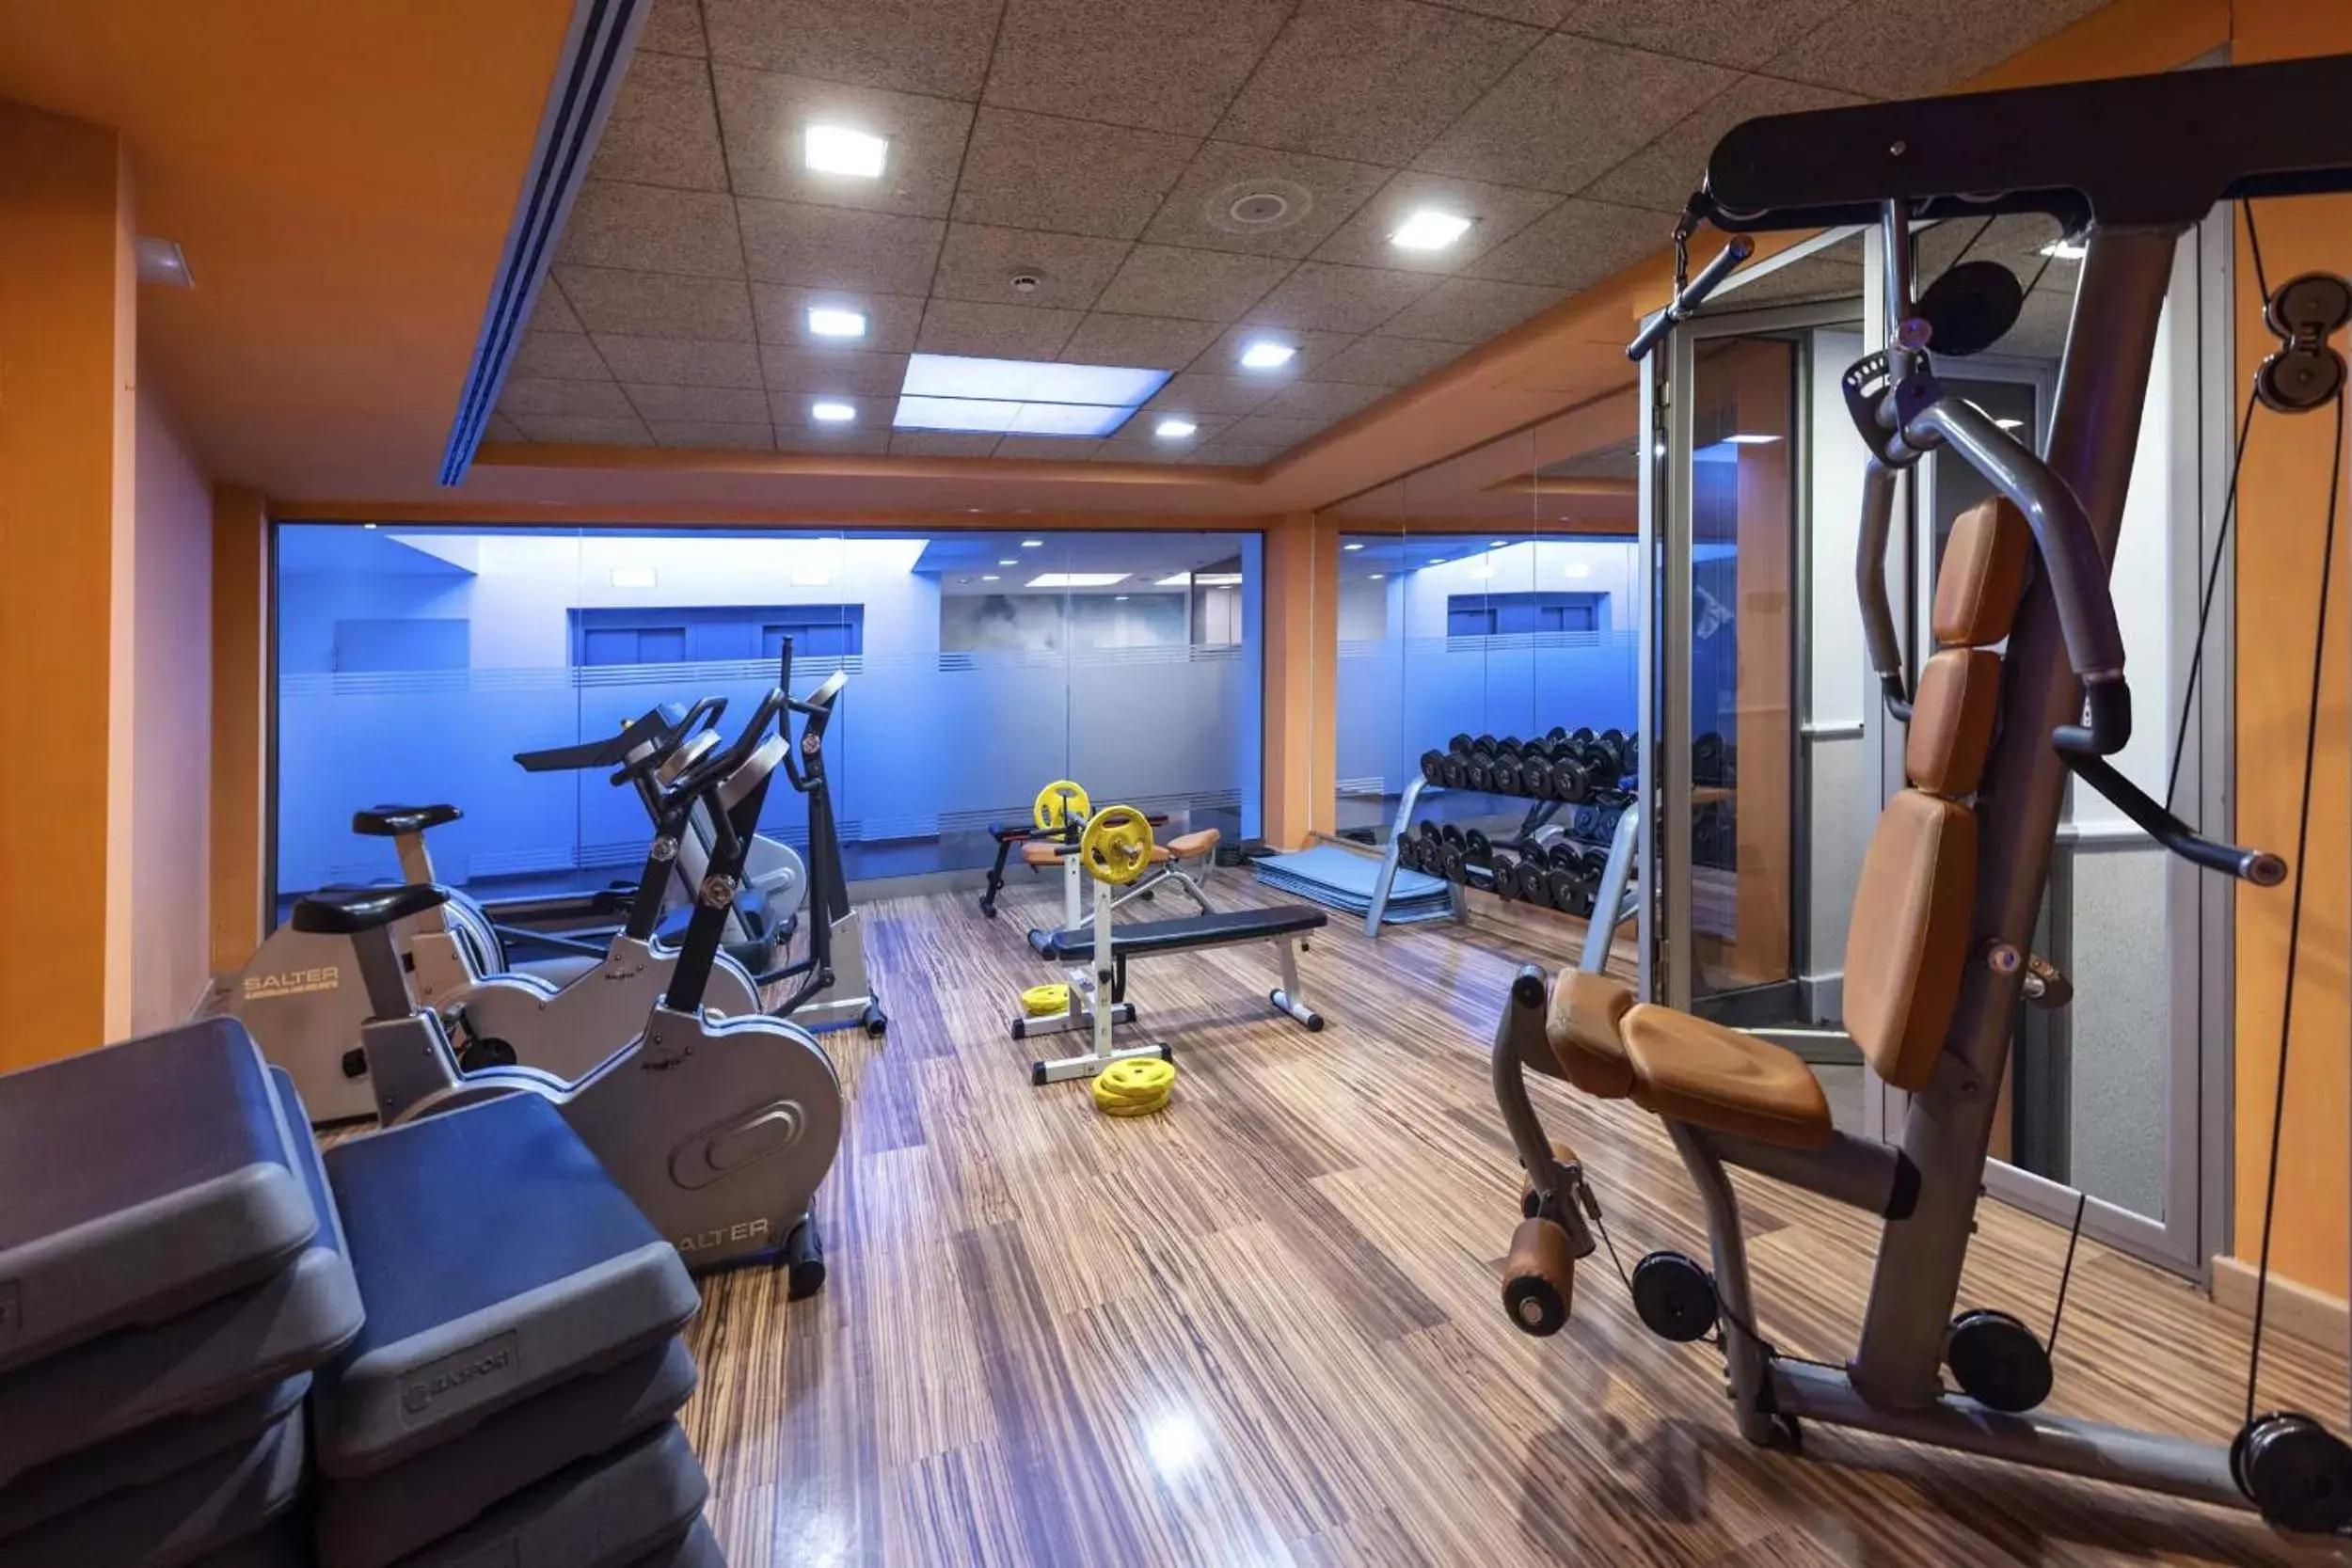 Fitness centre/facilities, Fitness Center/Facilities in Globales Castillo de Ayud